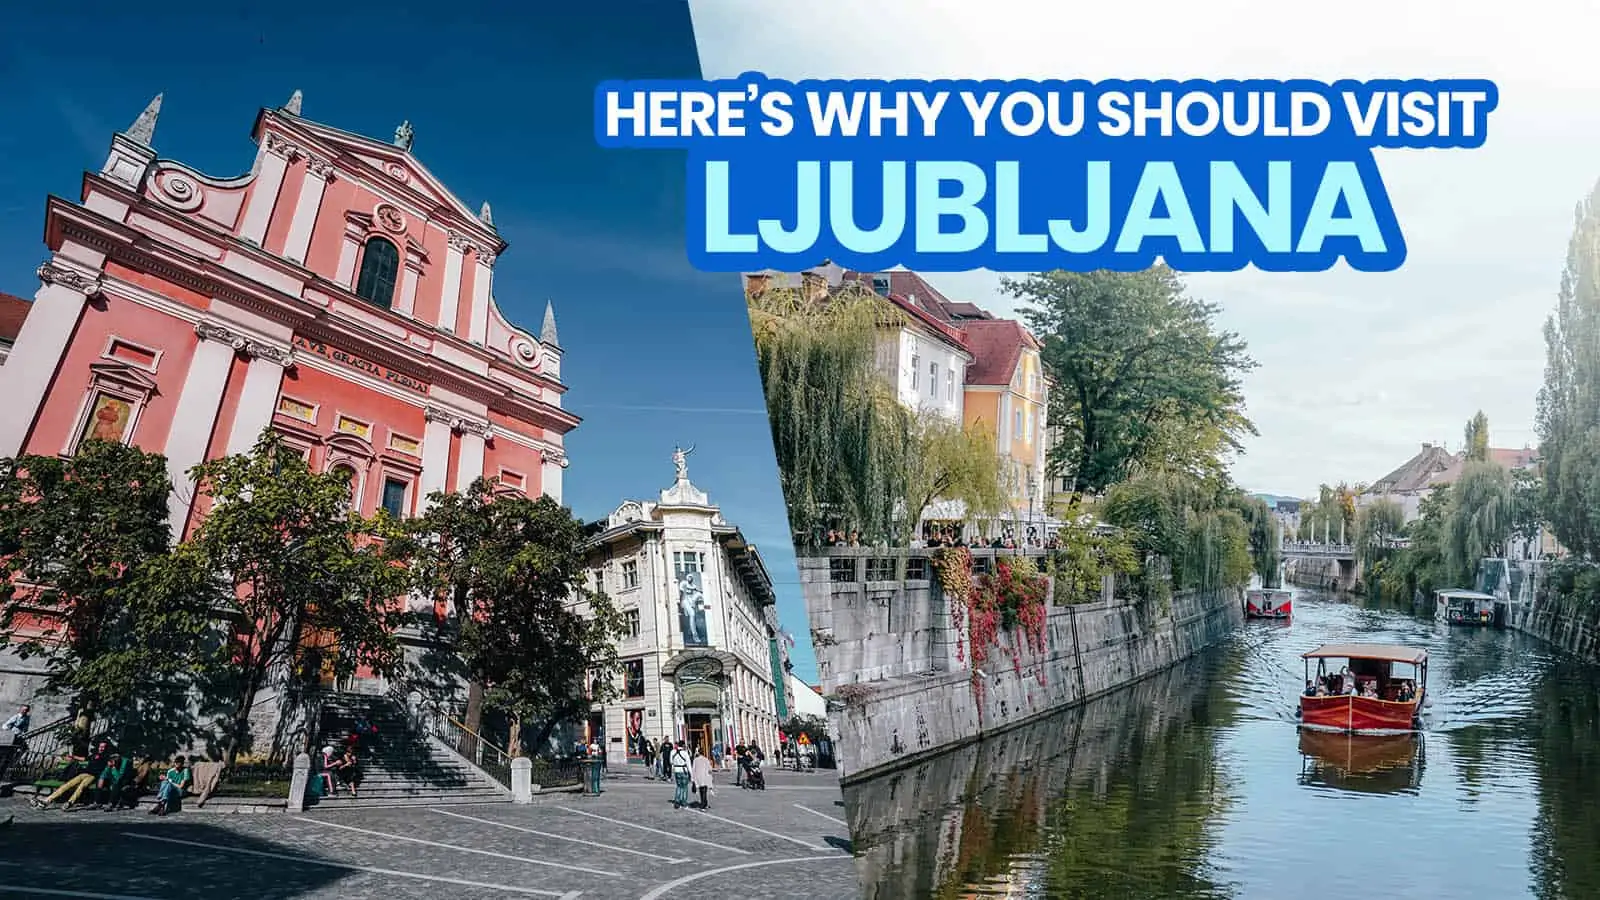 卢布尔雅那:25件最值得做的事和游览的地方